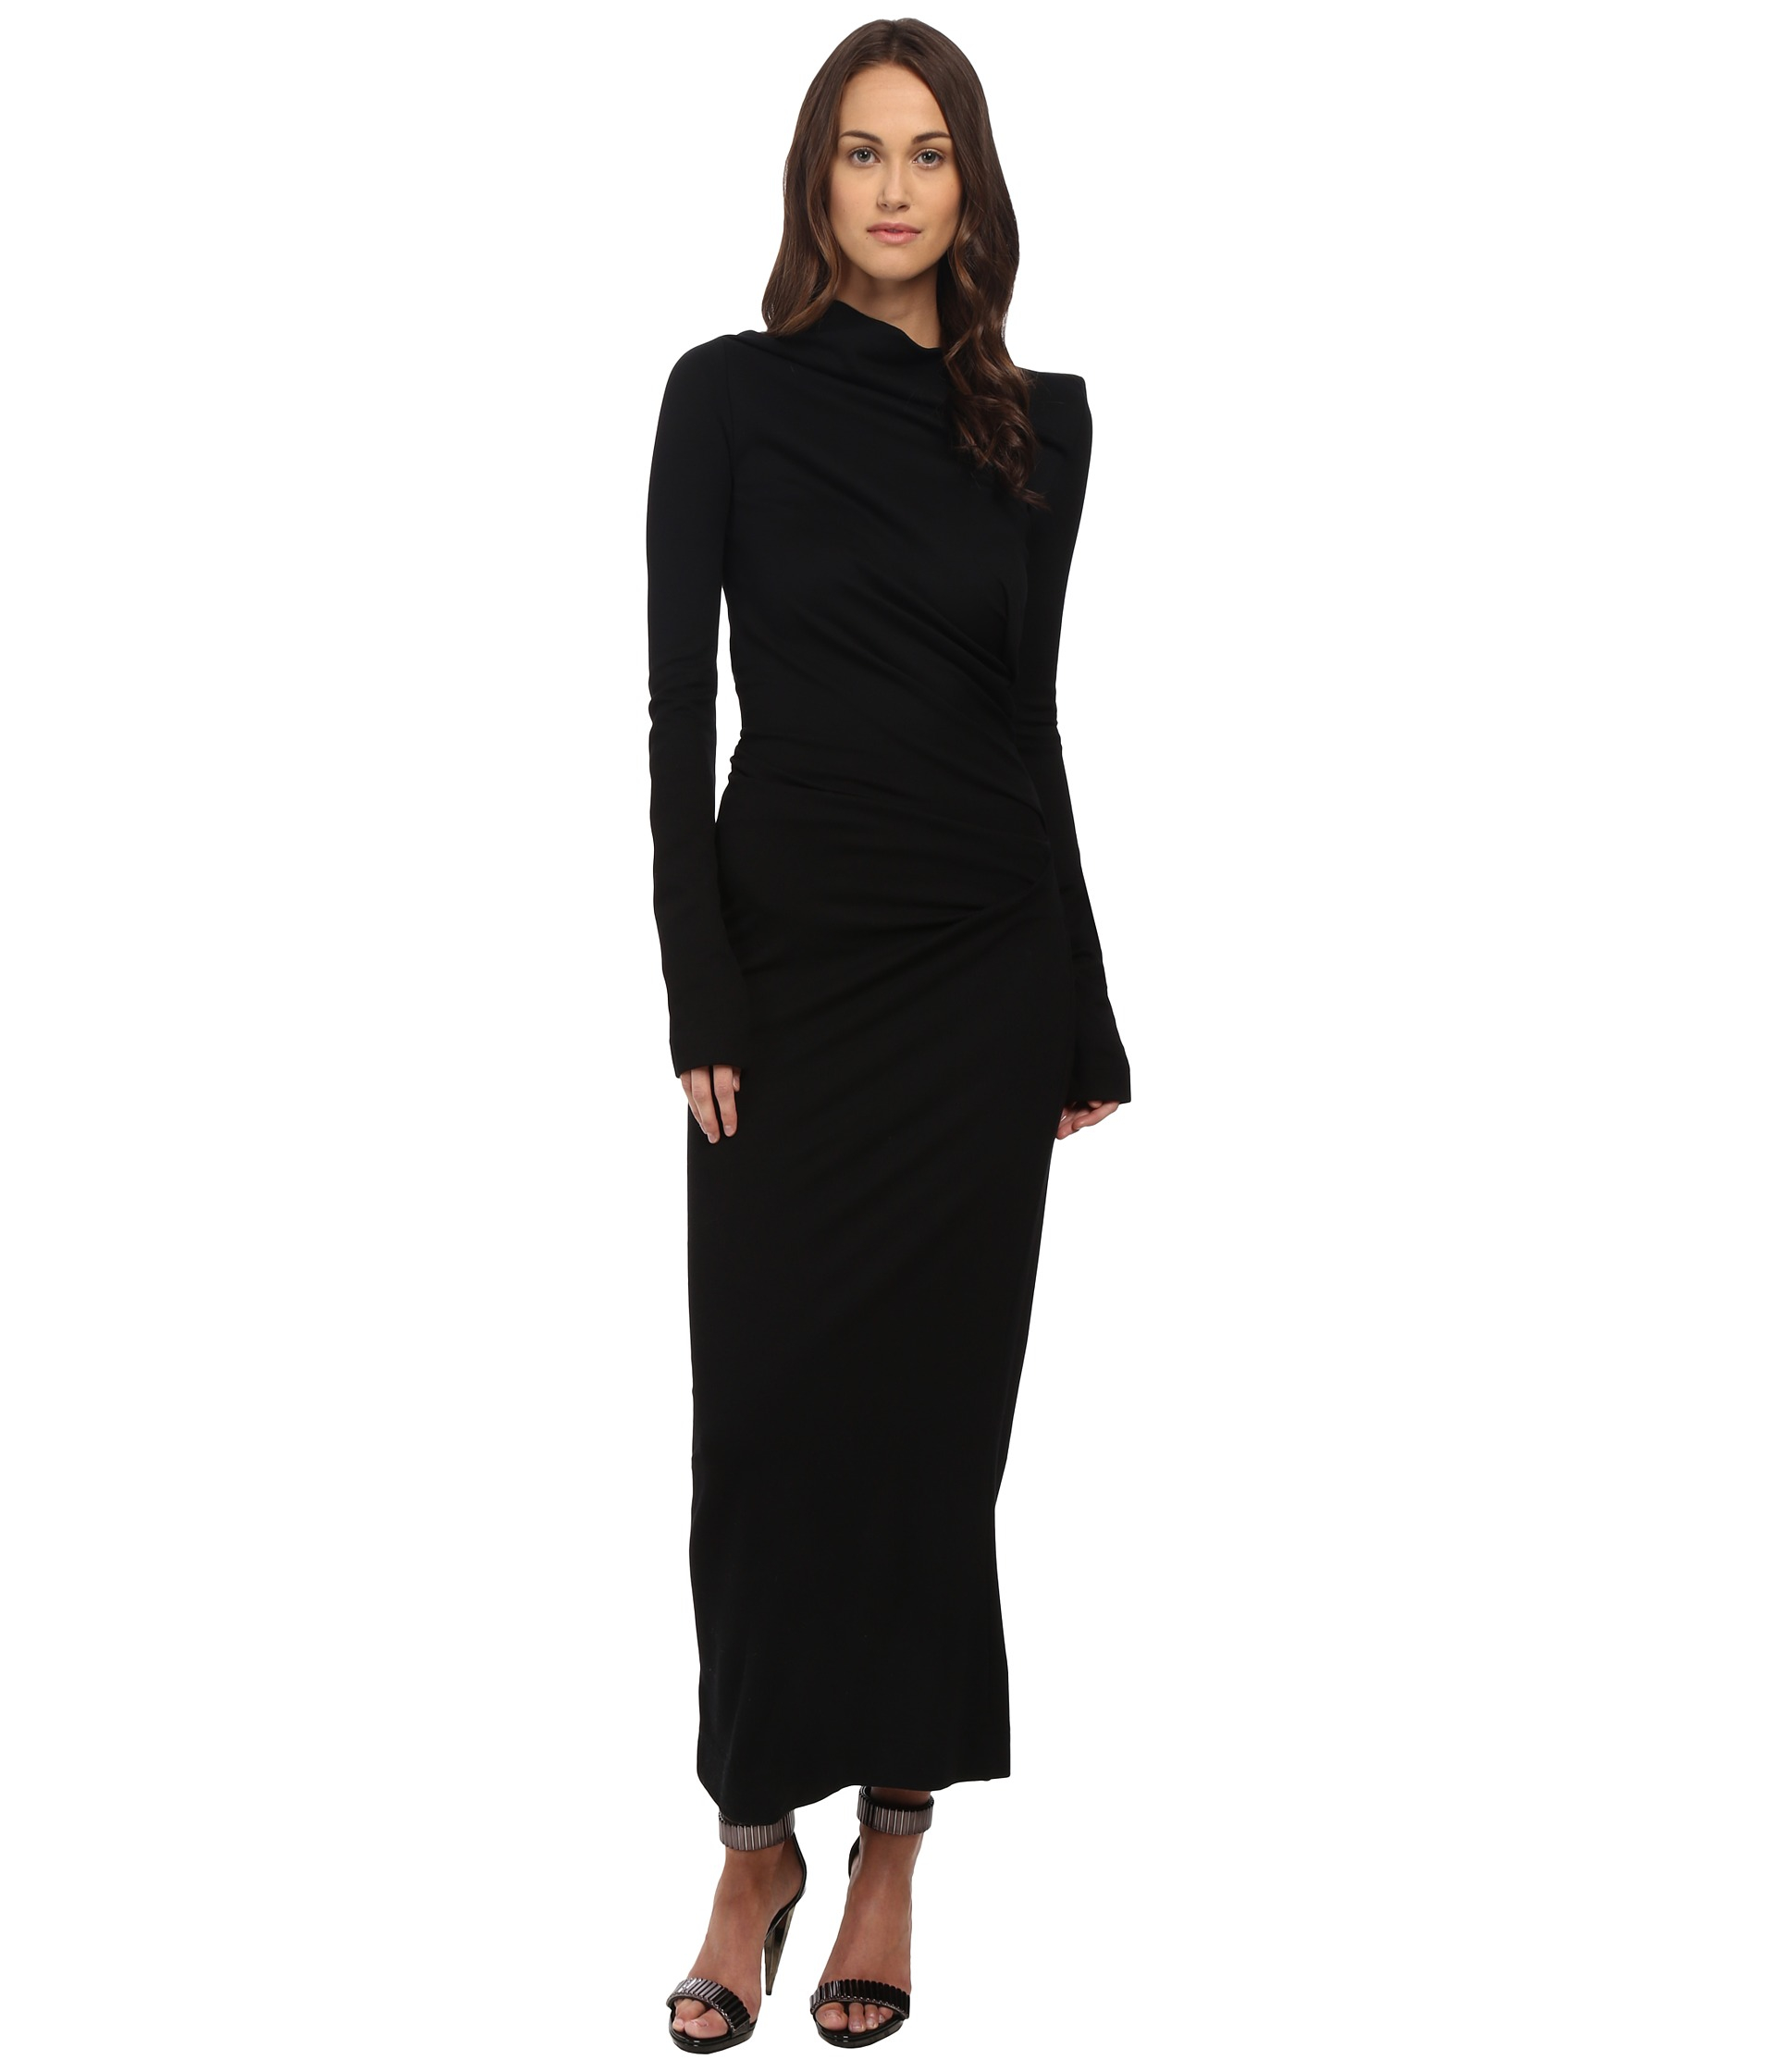 Vivienne westwood Long Sleeve Taxa Dress in Black | Lyst